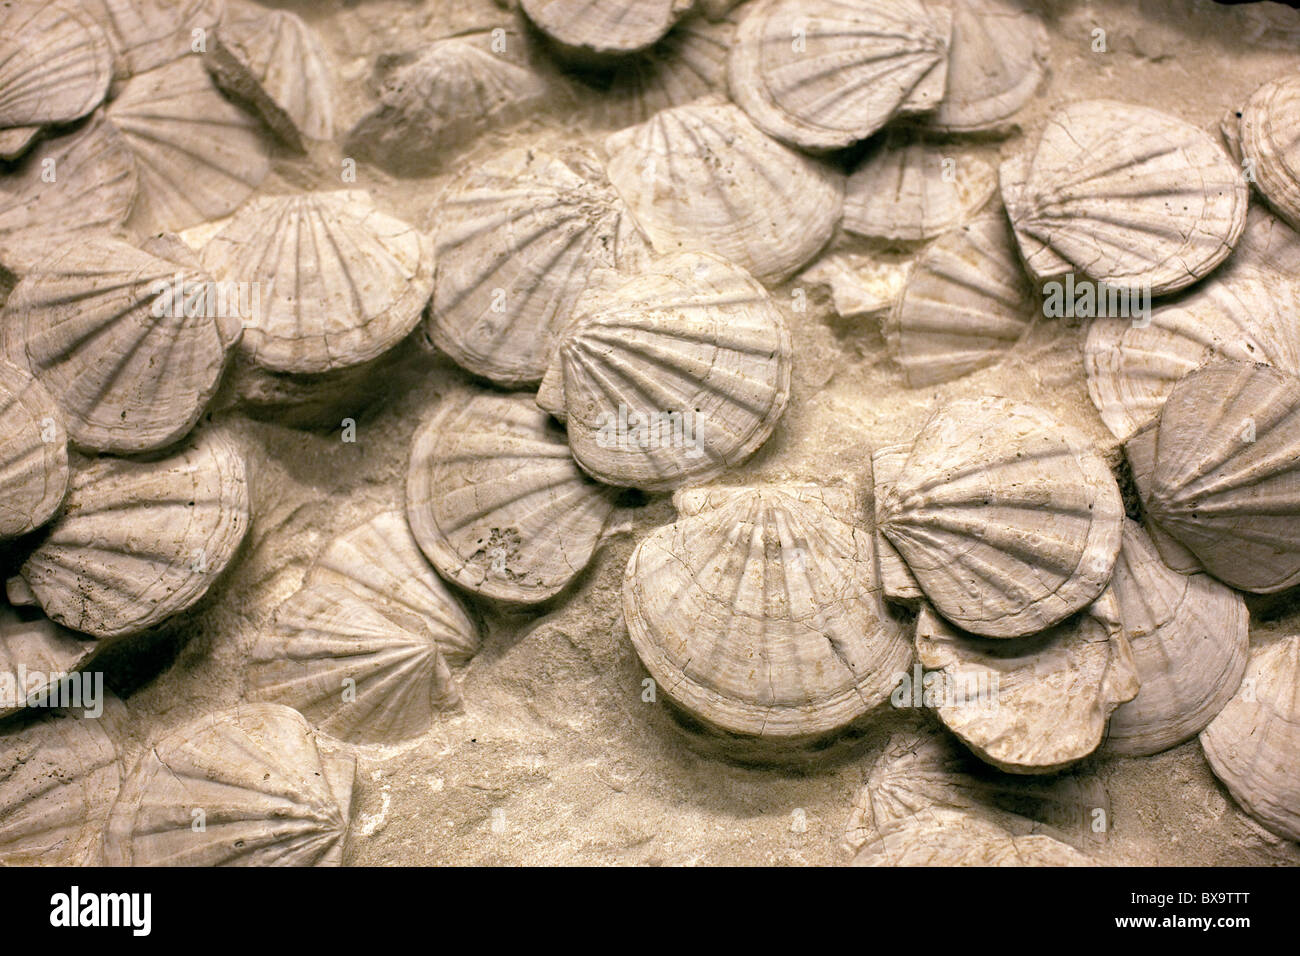 Visualización de conchas fosilizadas en el Royal Festival Hall, Londres, proporcionada por la compañía petrolera Shell Foto de stock